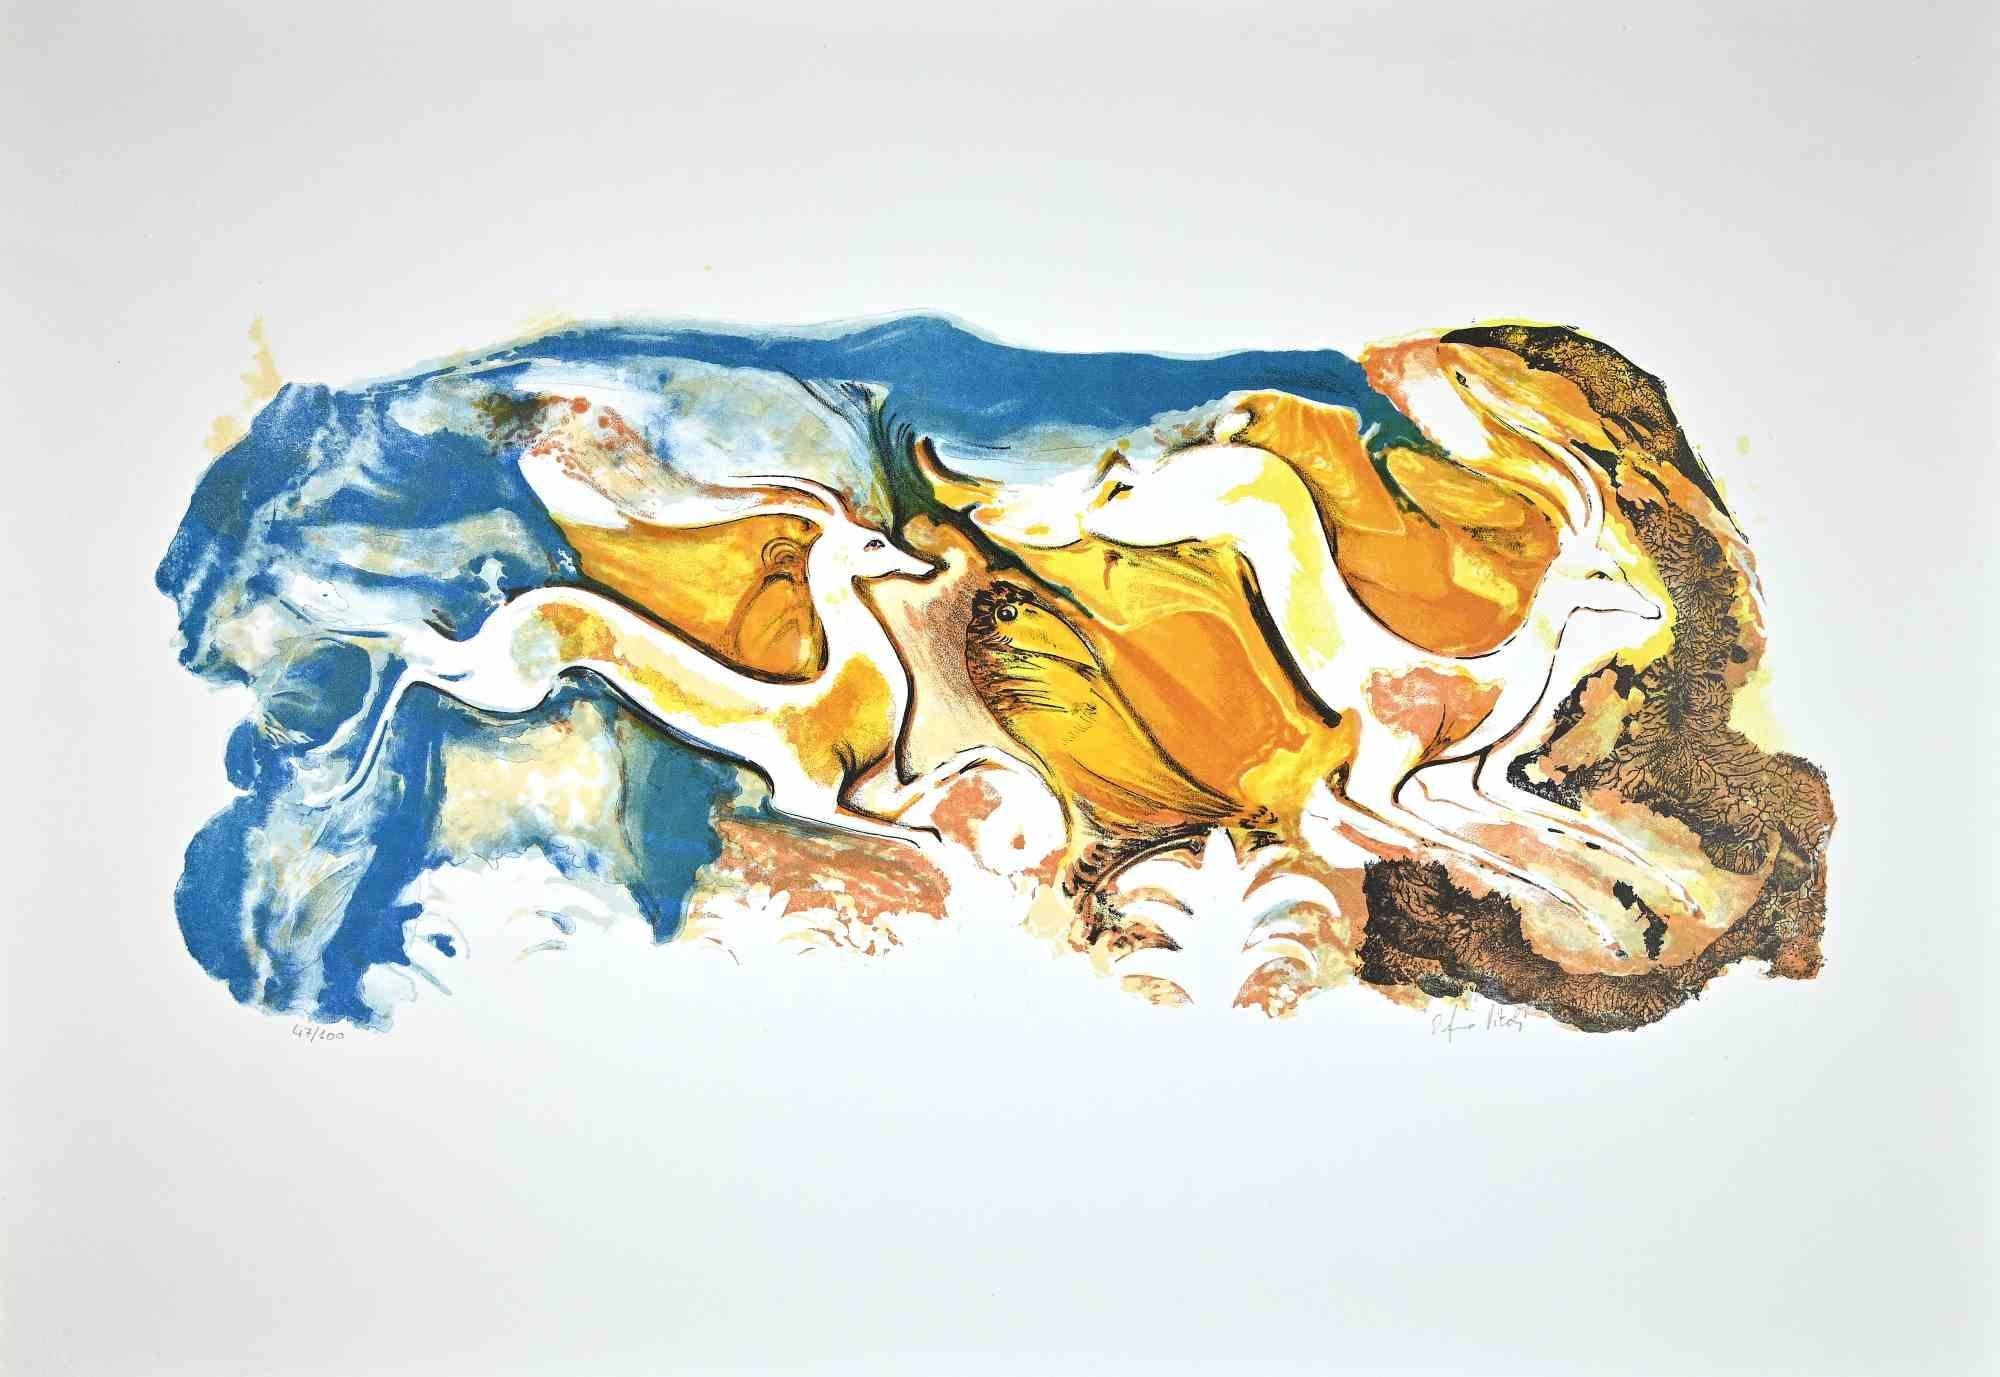 Deers ist eine Original-Lithographie von Orfeo Vitali aus dem Jahre 1970.

Handsigniert.

Nummeriert. Auflage von /100.

Das Kunstwerk ist in harmonischen Farben in einer ausgewogenen Komposition dargestellt.